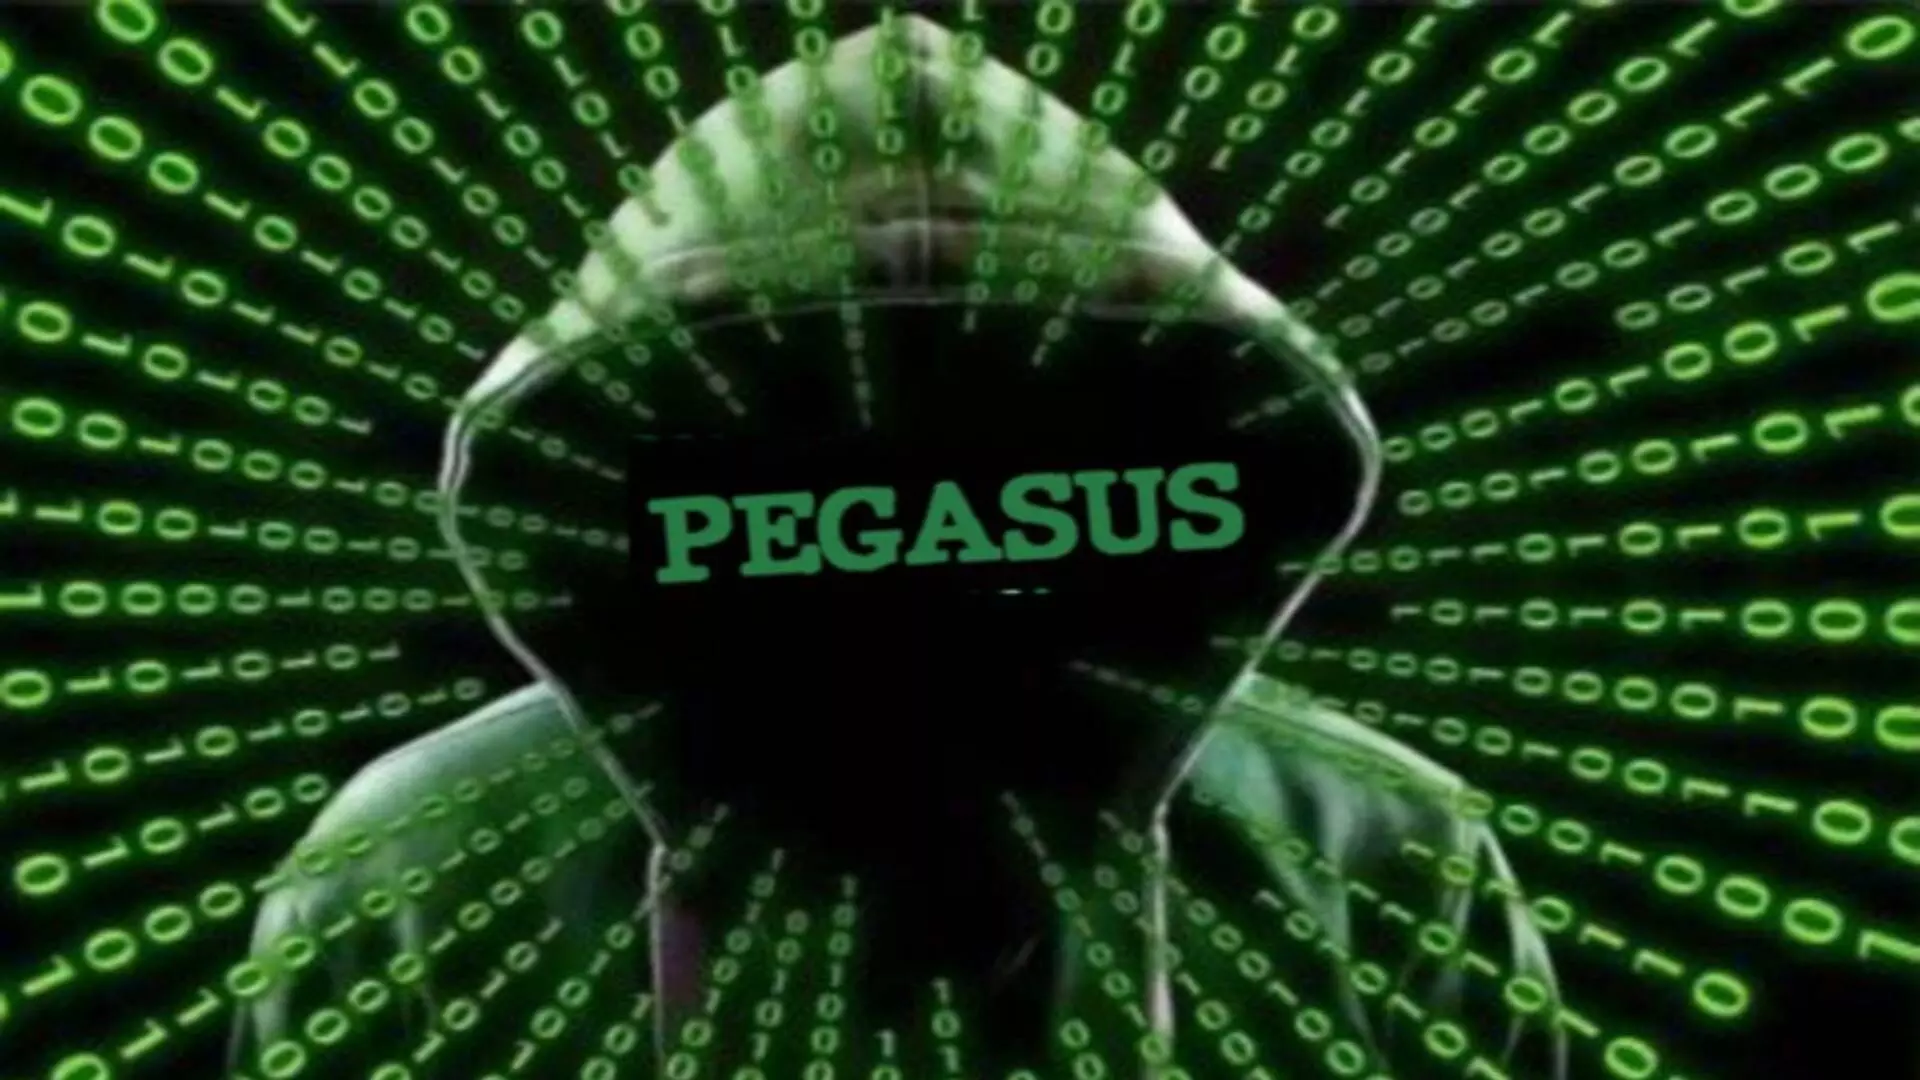 Pegasus : याचिकाकर्त्यांनी सोशल मीडियावरील वाद टाळावे- सुप्रीम कोर्ट